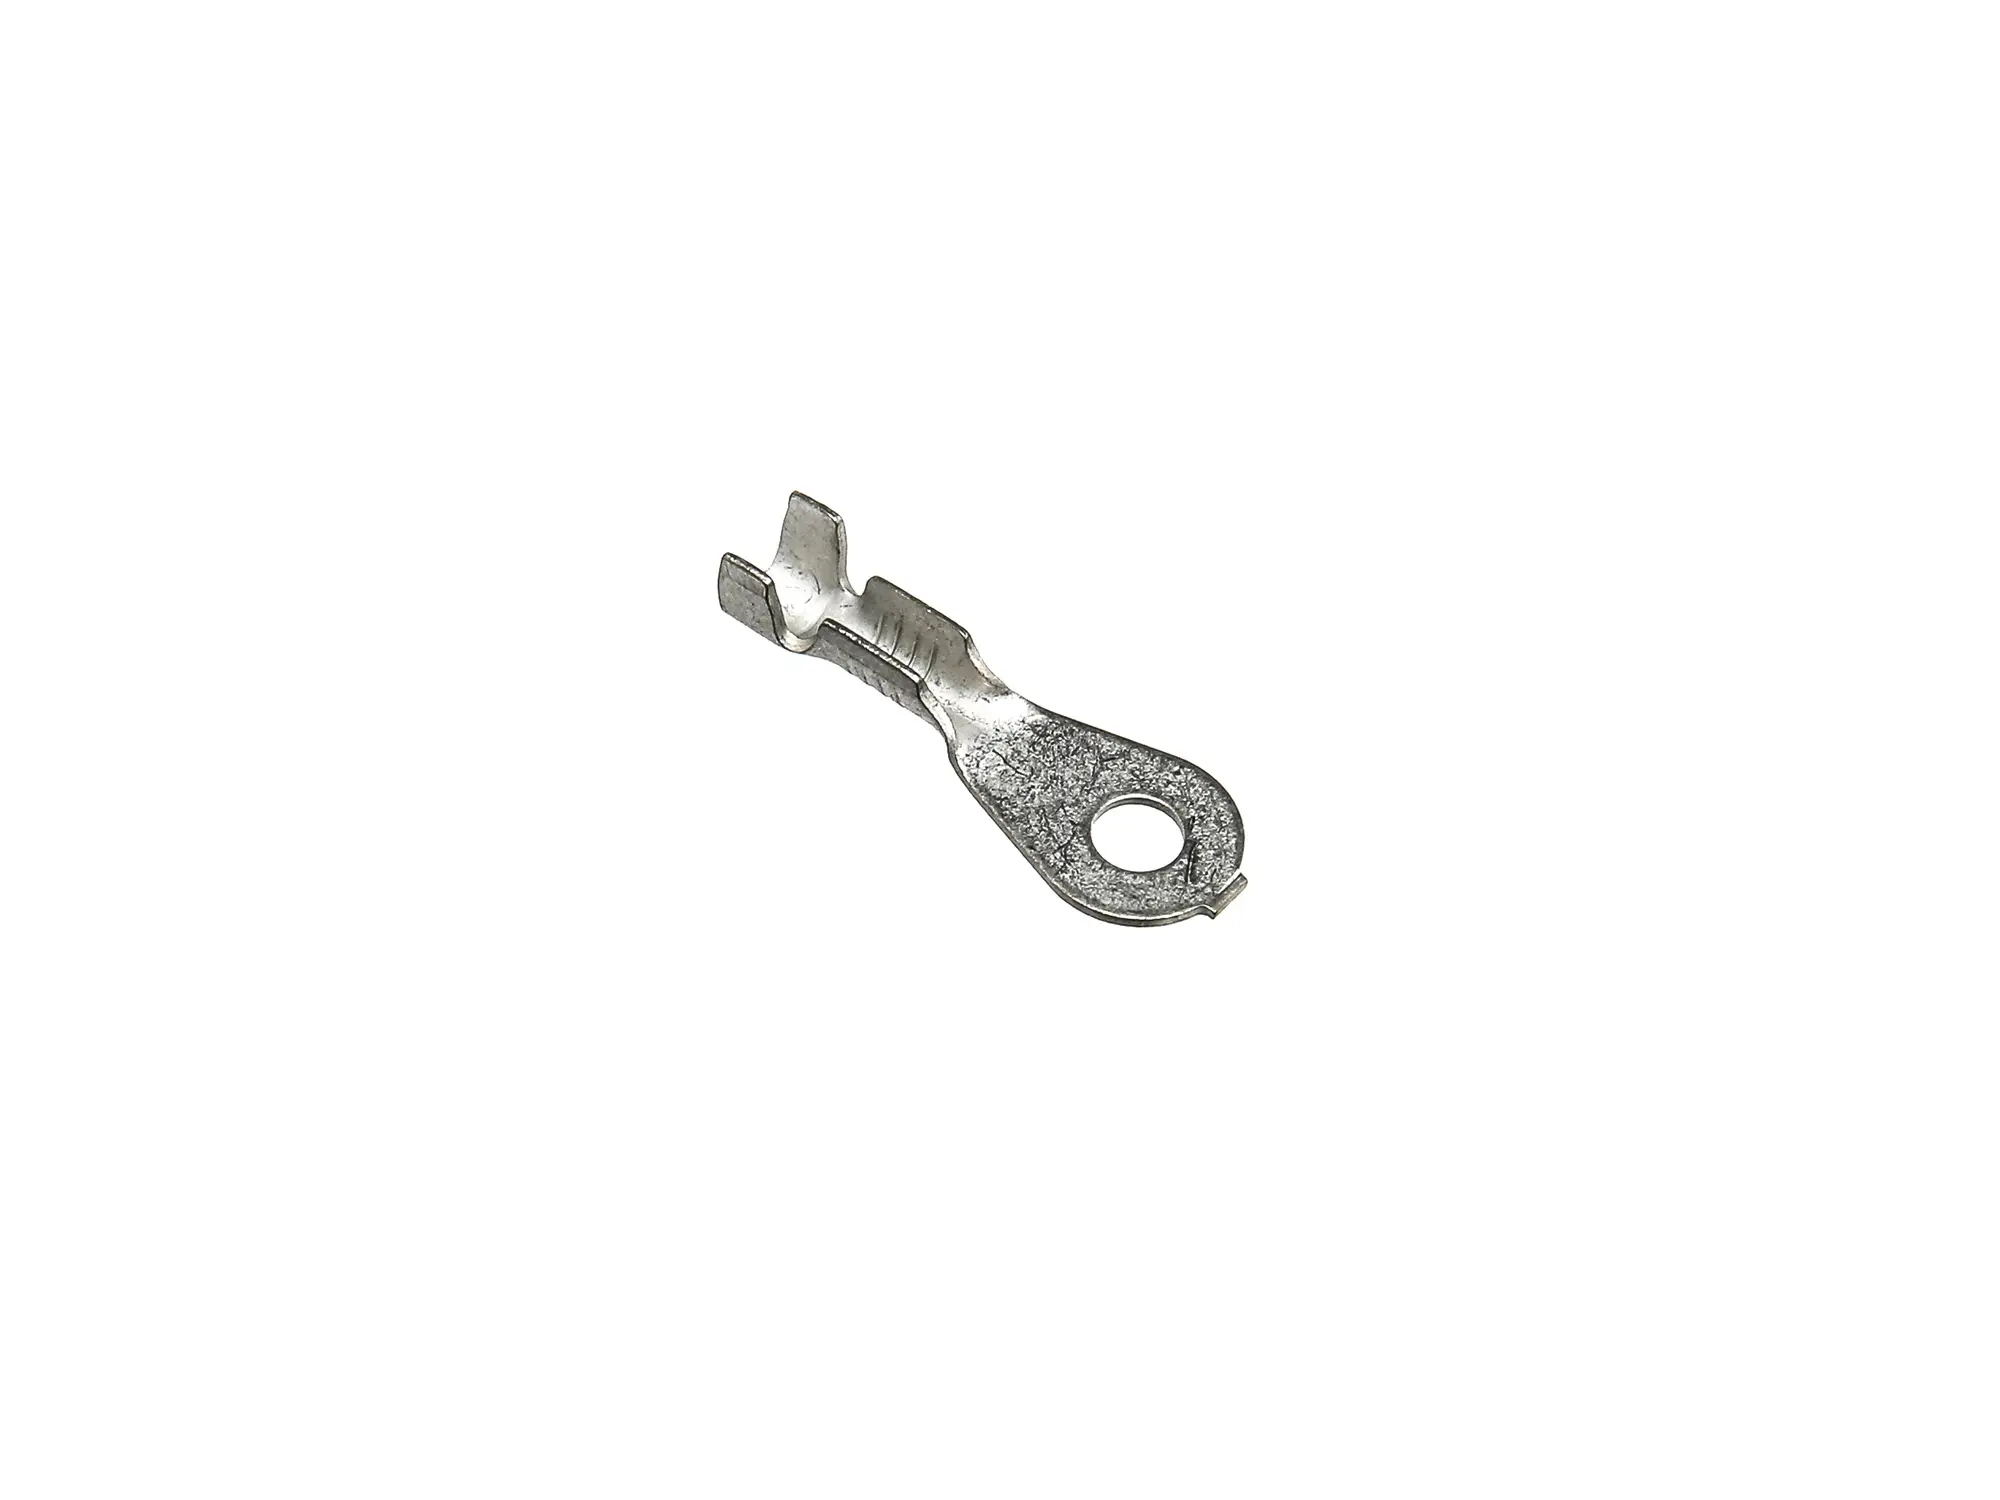 Kabelschuh - Ringzunge ØM3 ohne Isolierung (0,5-1,0mm²), Art.-Nr.: 10055110 - Bild 1